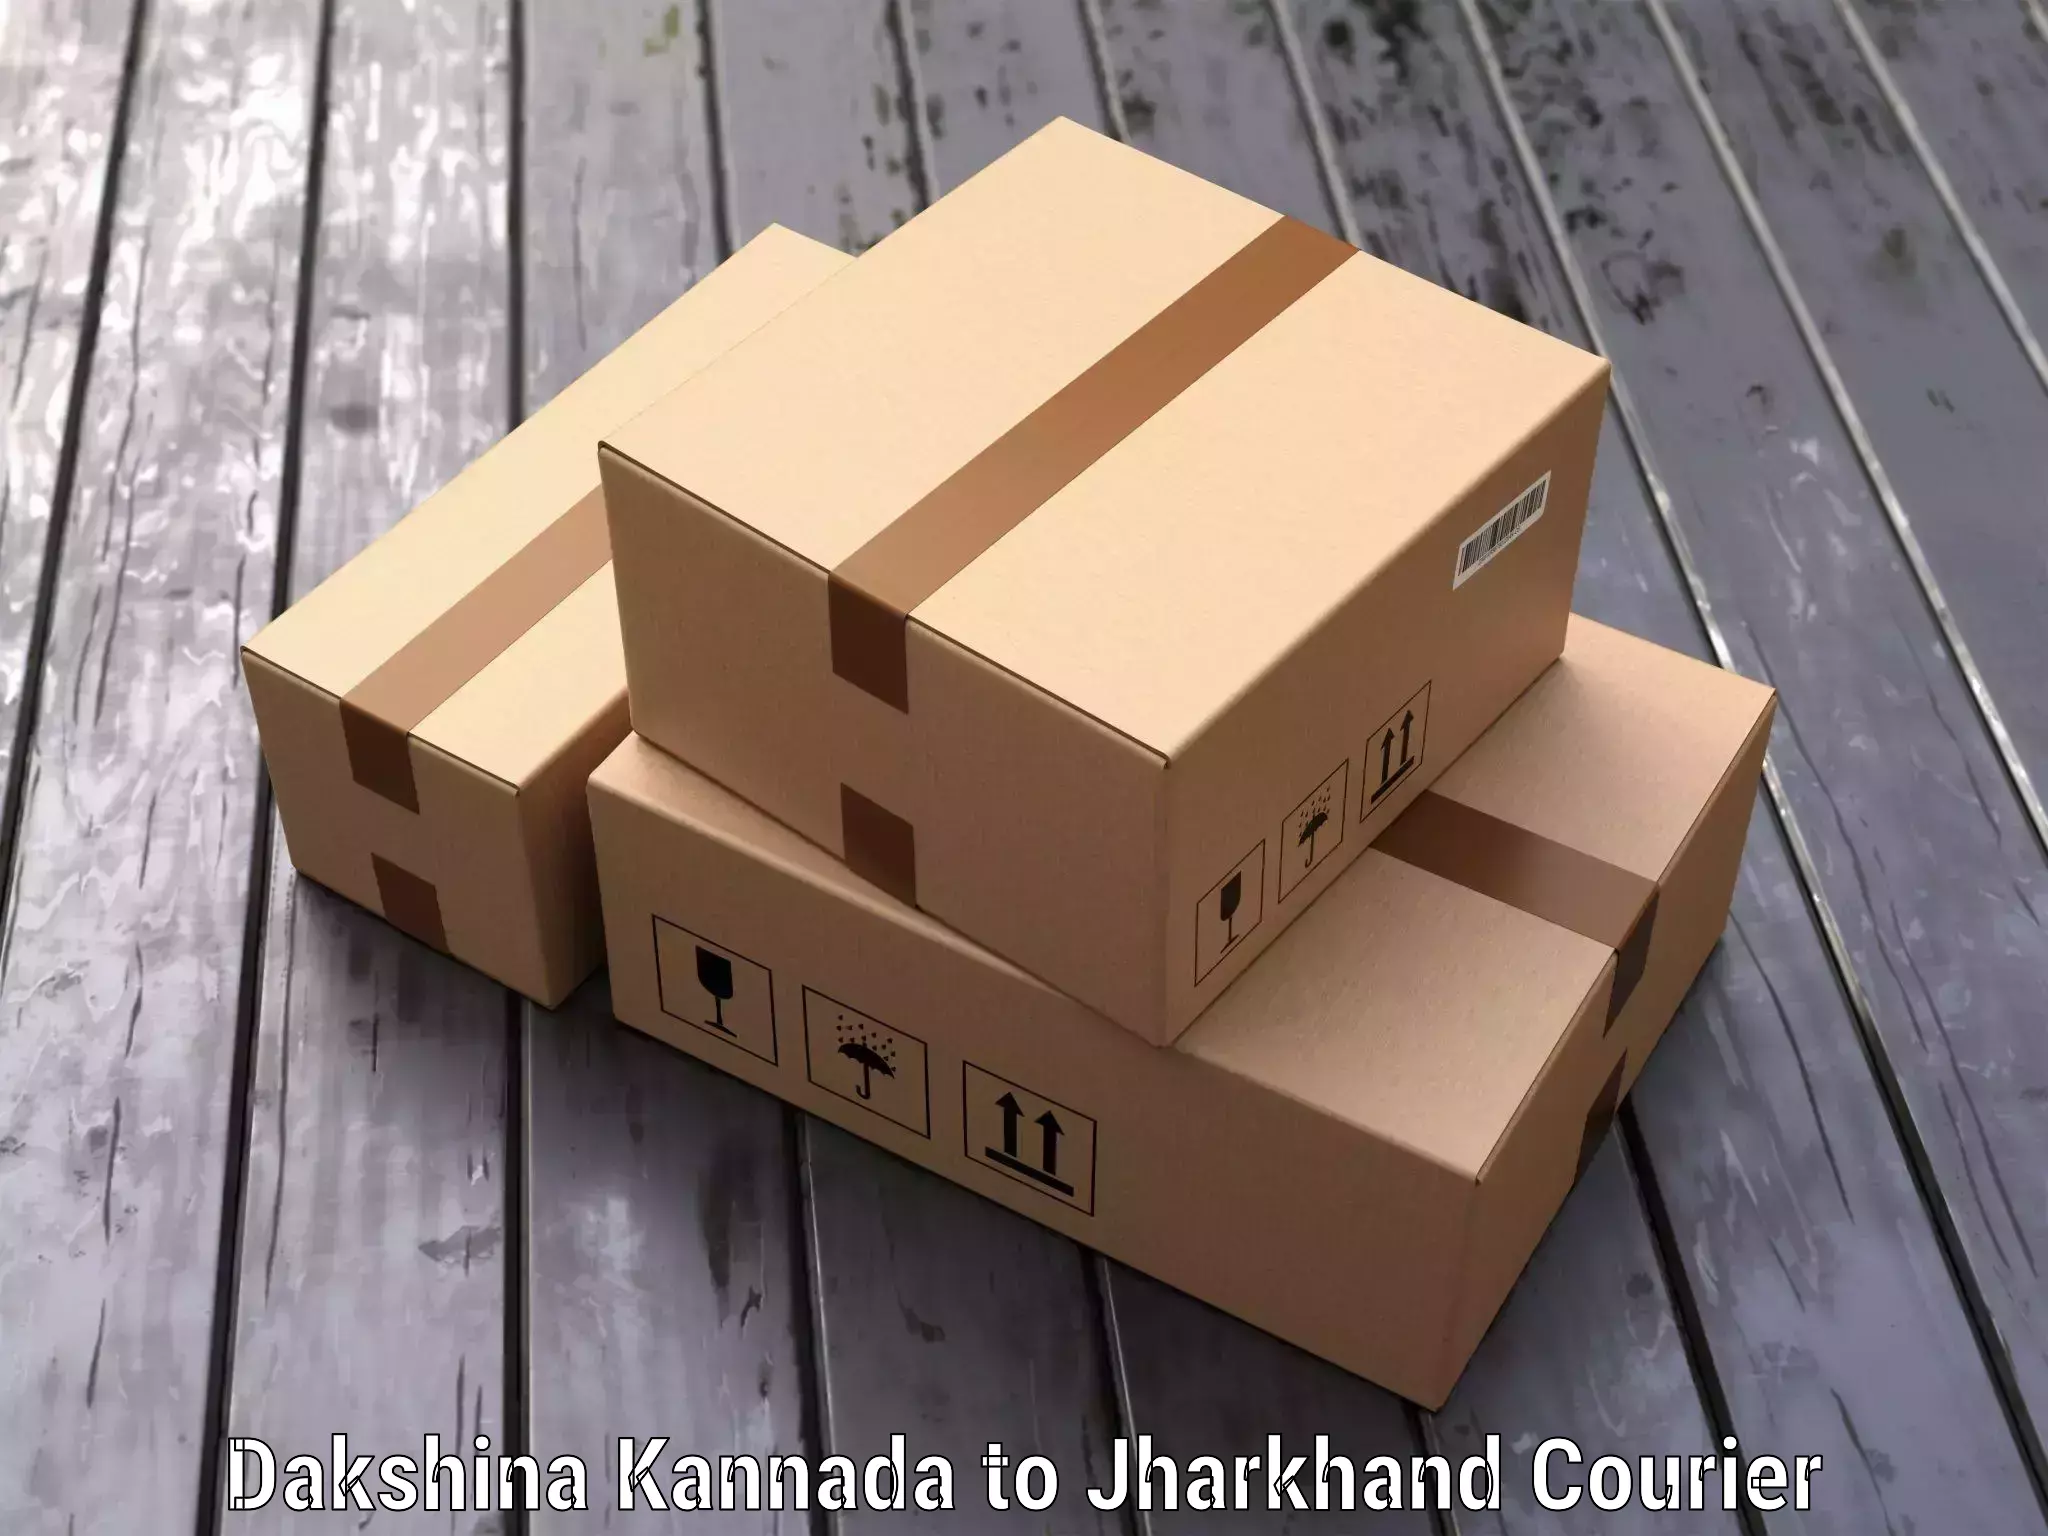 Luggage delivery estimate Dakshina Kannada to Jharkhand